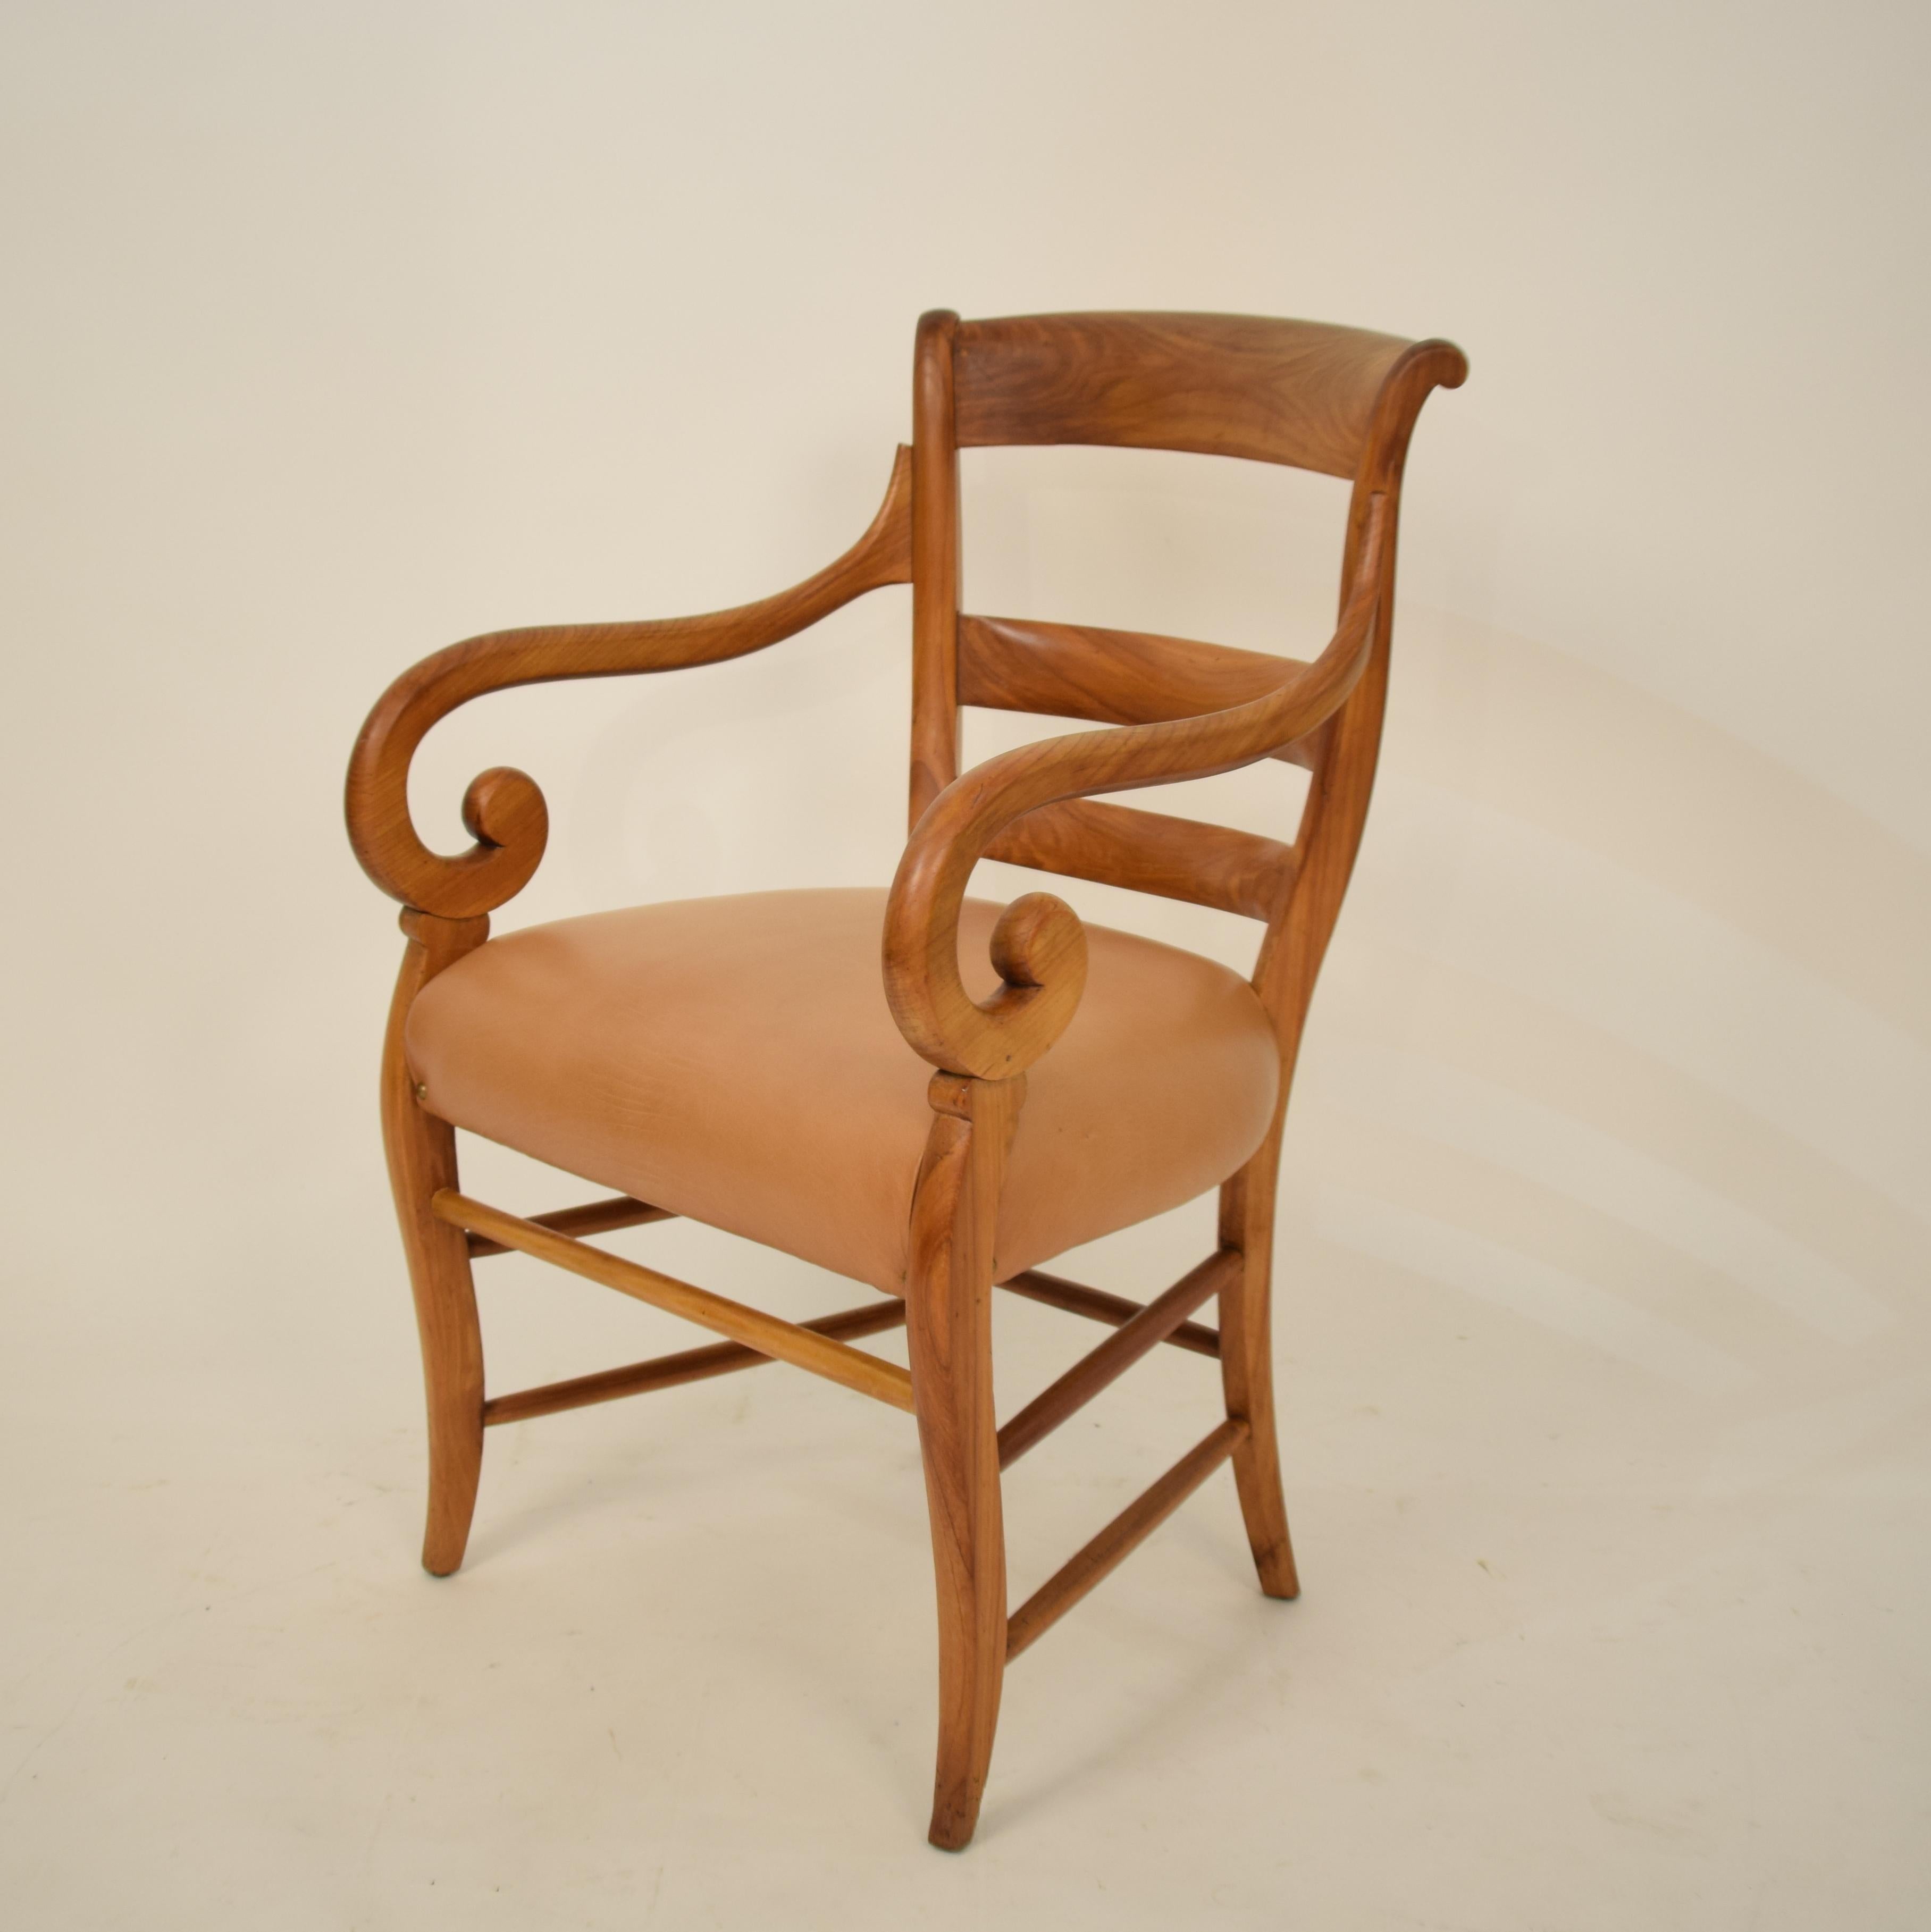 Dieser deutsche Biedermeier-Sessel aus dem 19. Jahrhundert wurde in den 1920er Jahren hergestellt. Er ist aus massivem Kirschbaumholz gefertigt und die Sitzfläche ist mit braunem / cognacfarbenem Leder bezogen.
Ein einzigartiges Stück, das ein